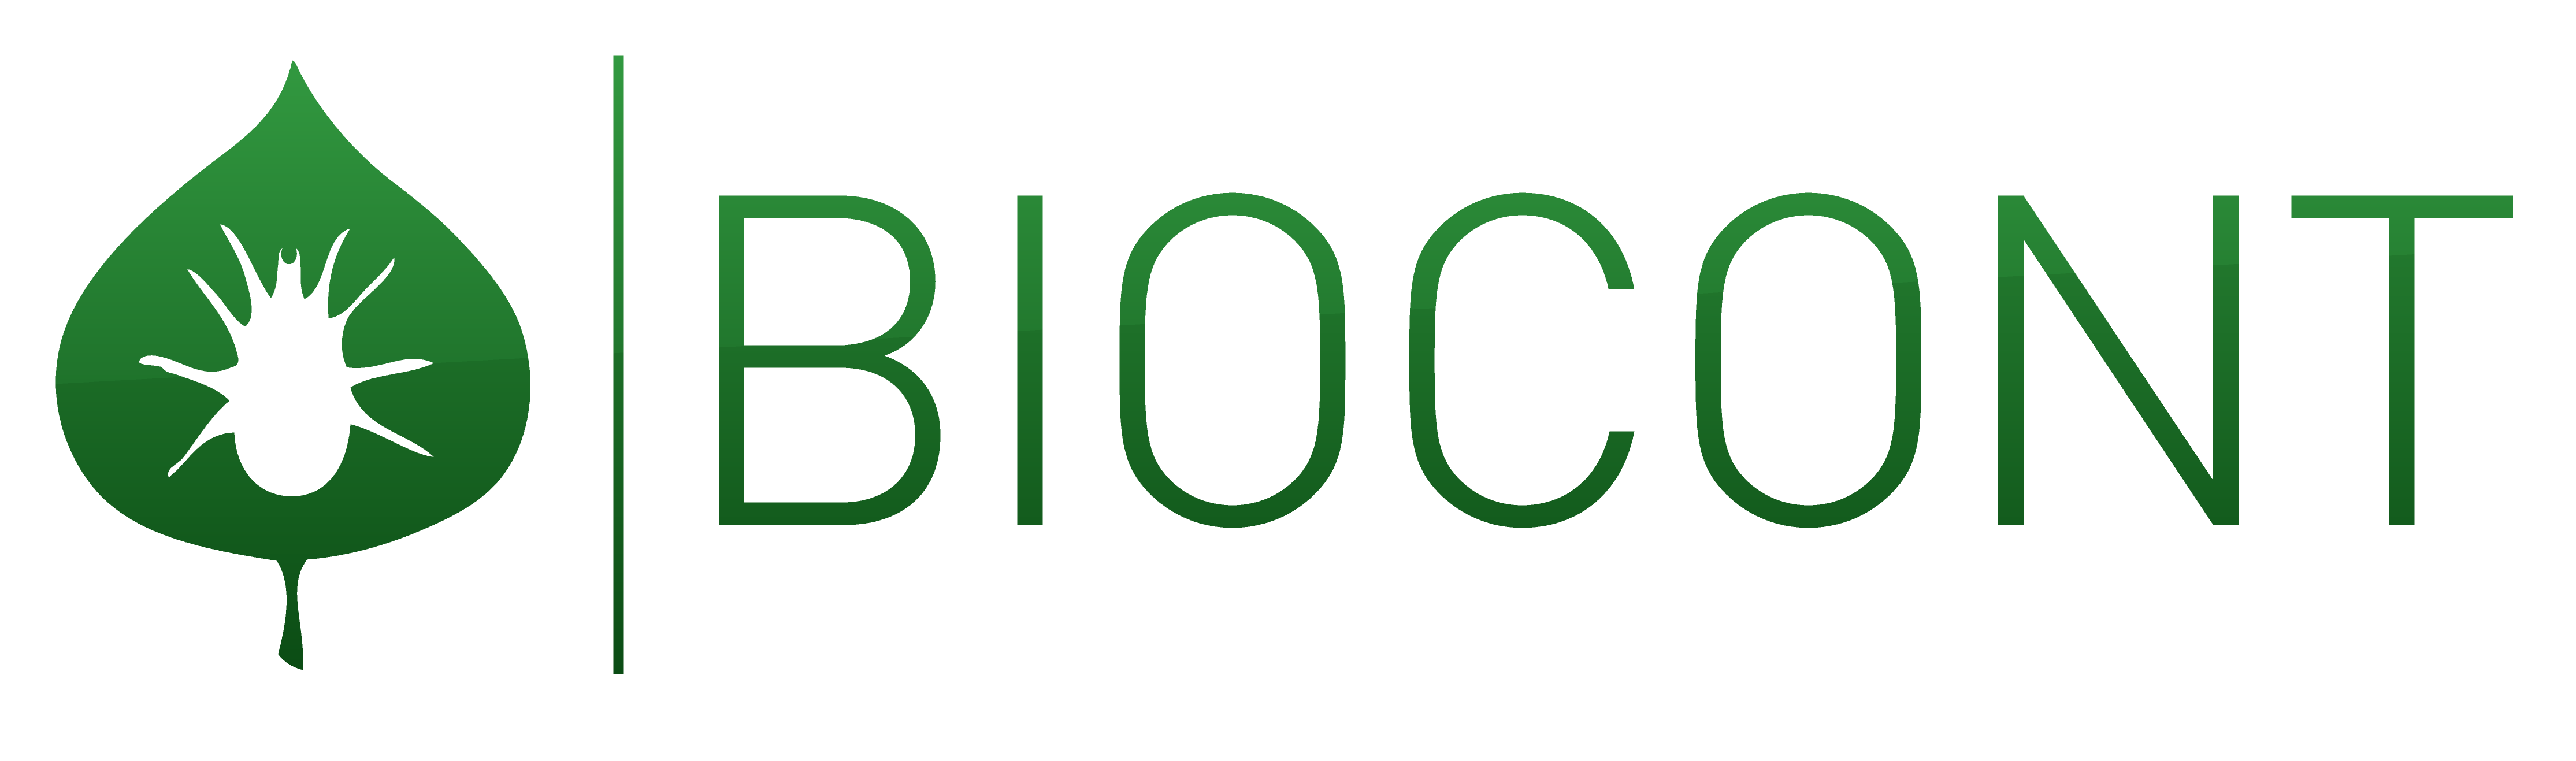 biocont-logo